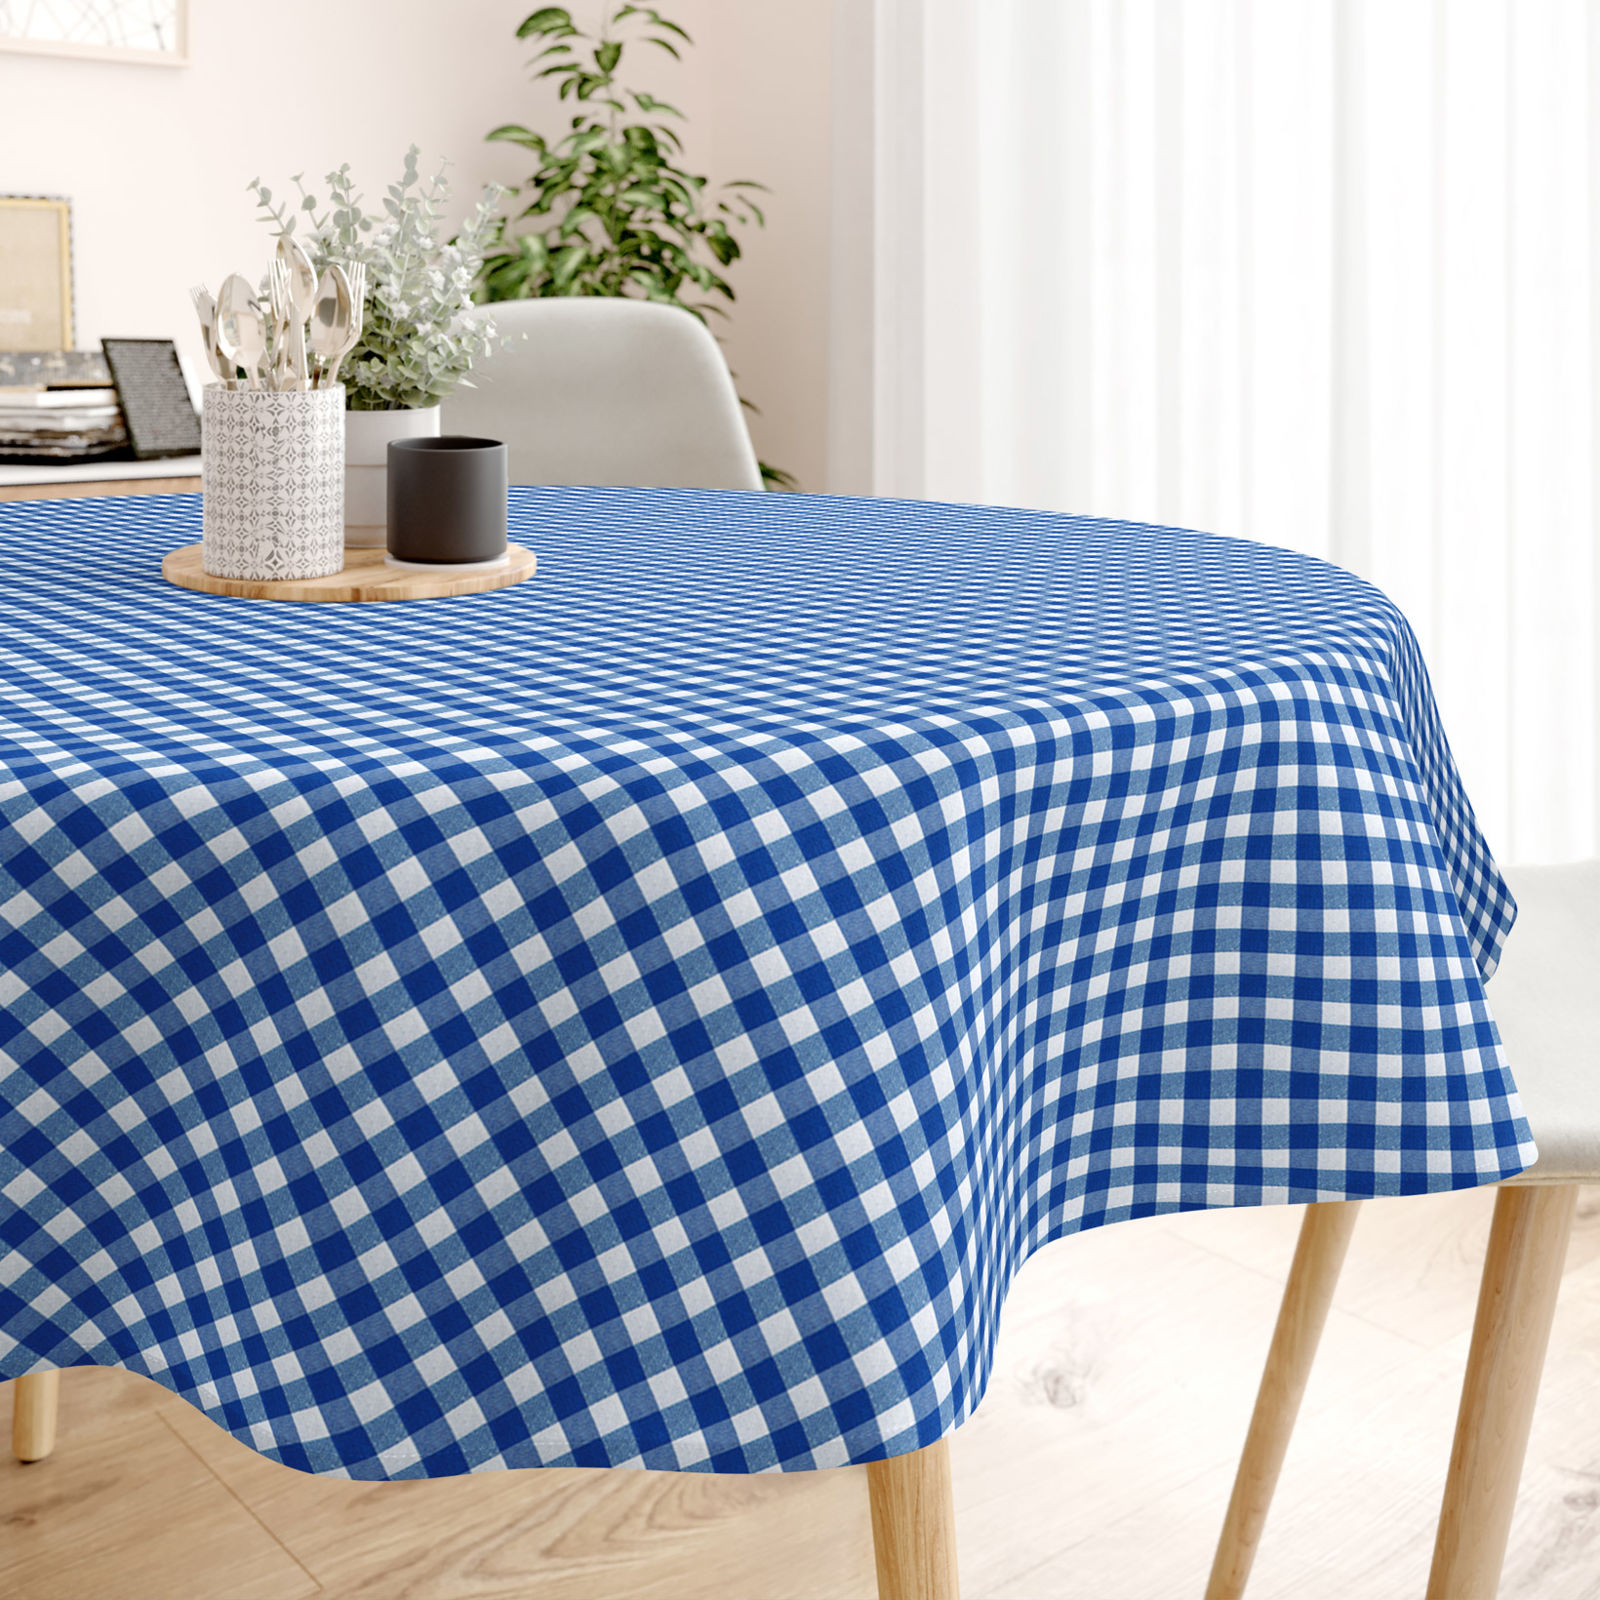 MENORCA dekoratív asztalterítő - kék - fehér kockás - kör alakú